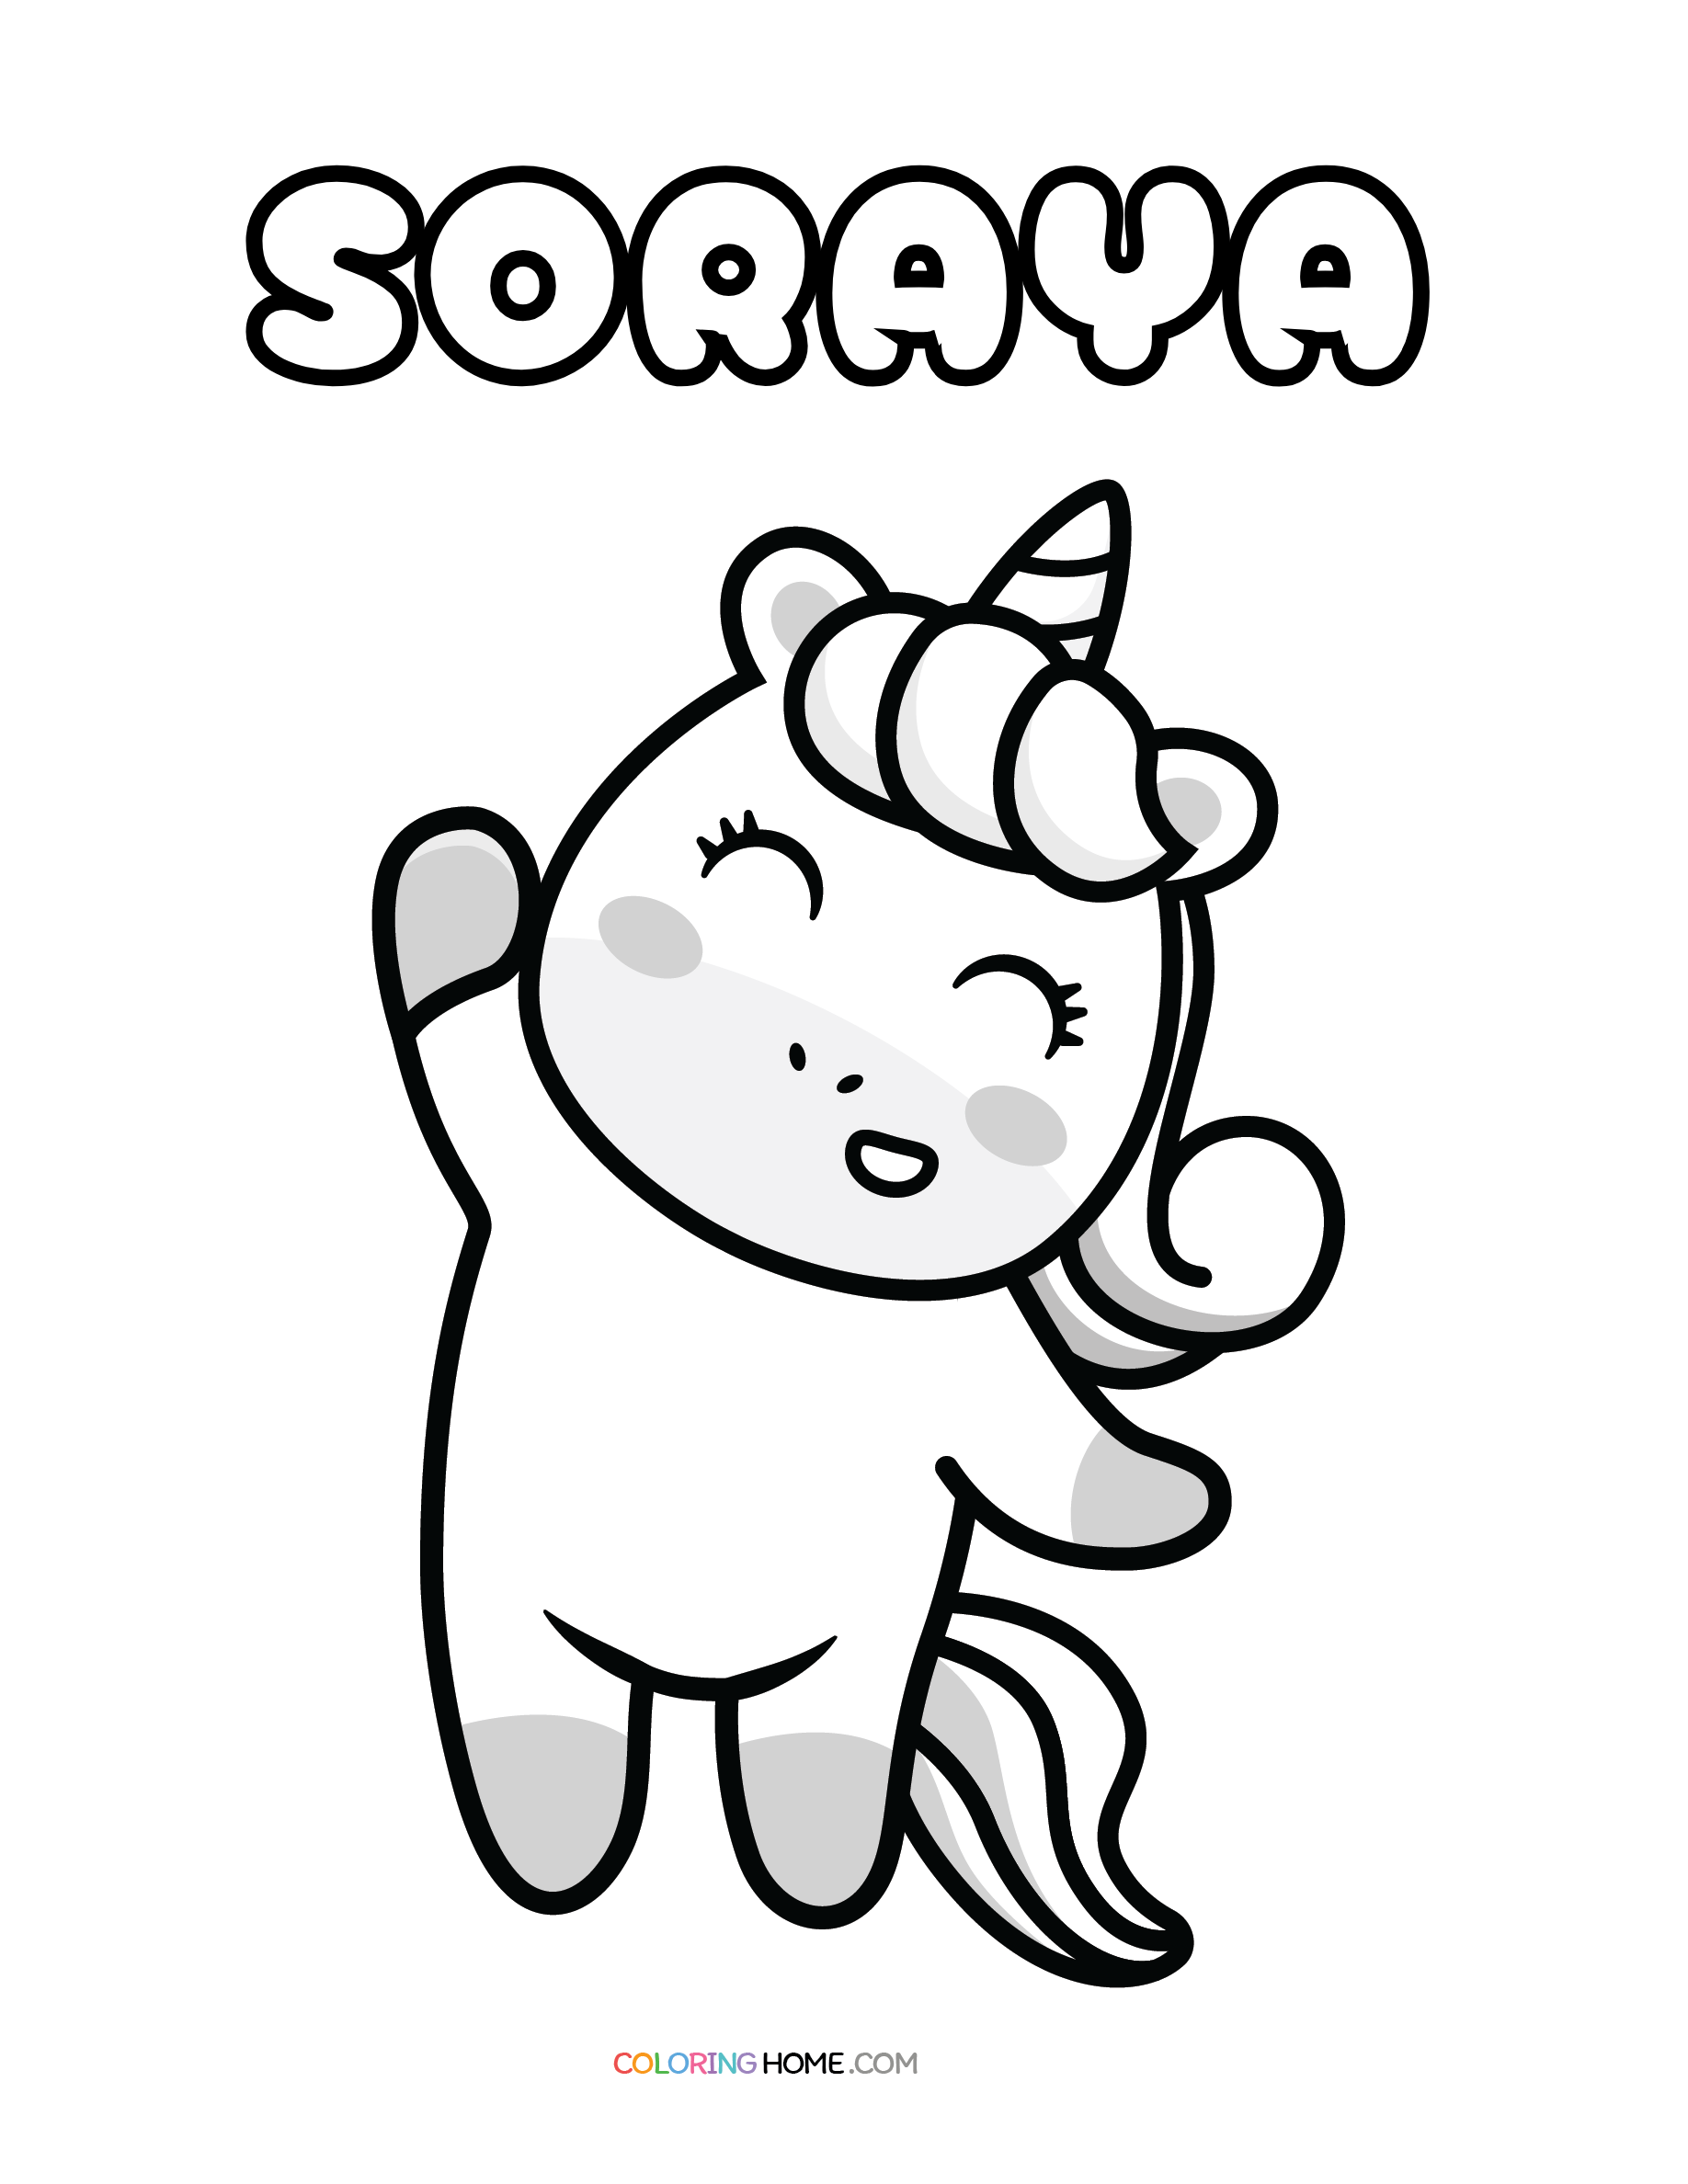 Soraya unicorn coloring page